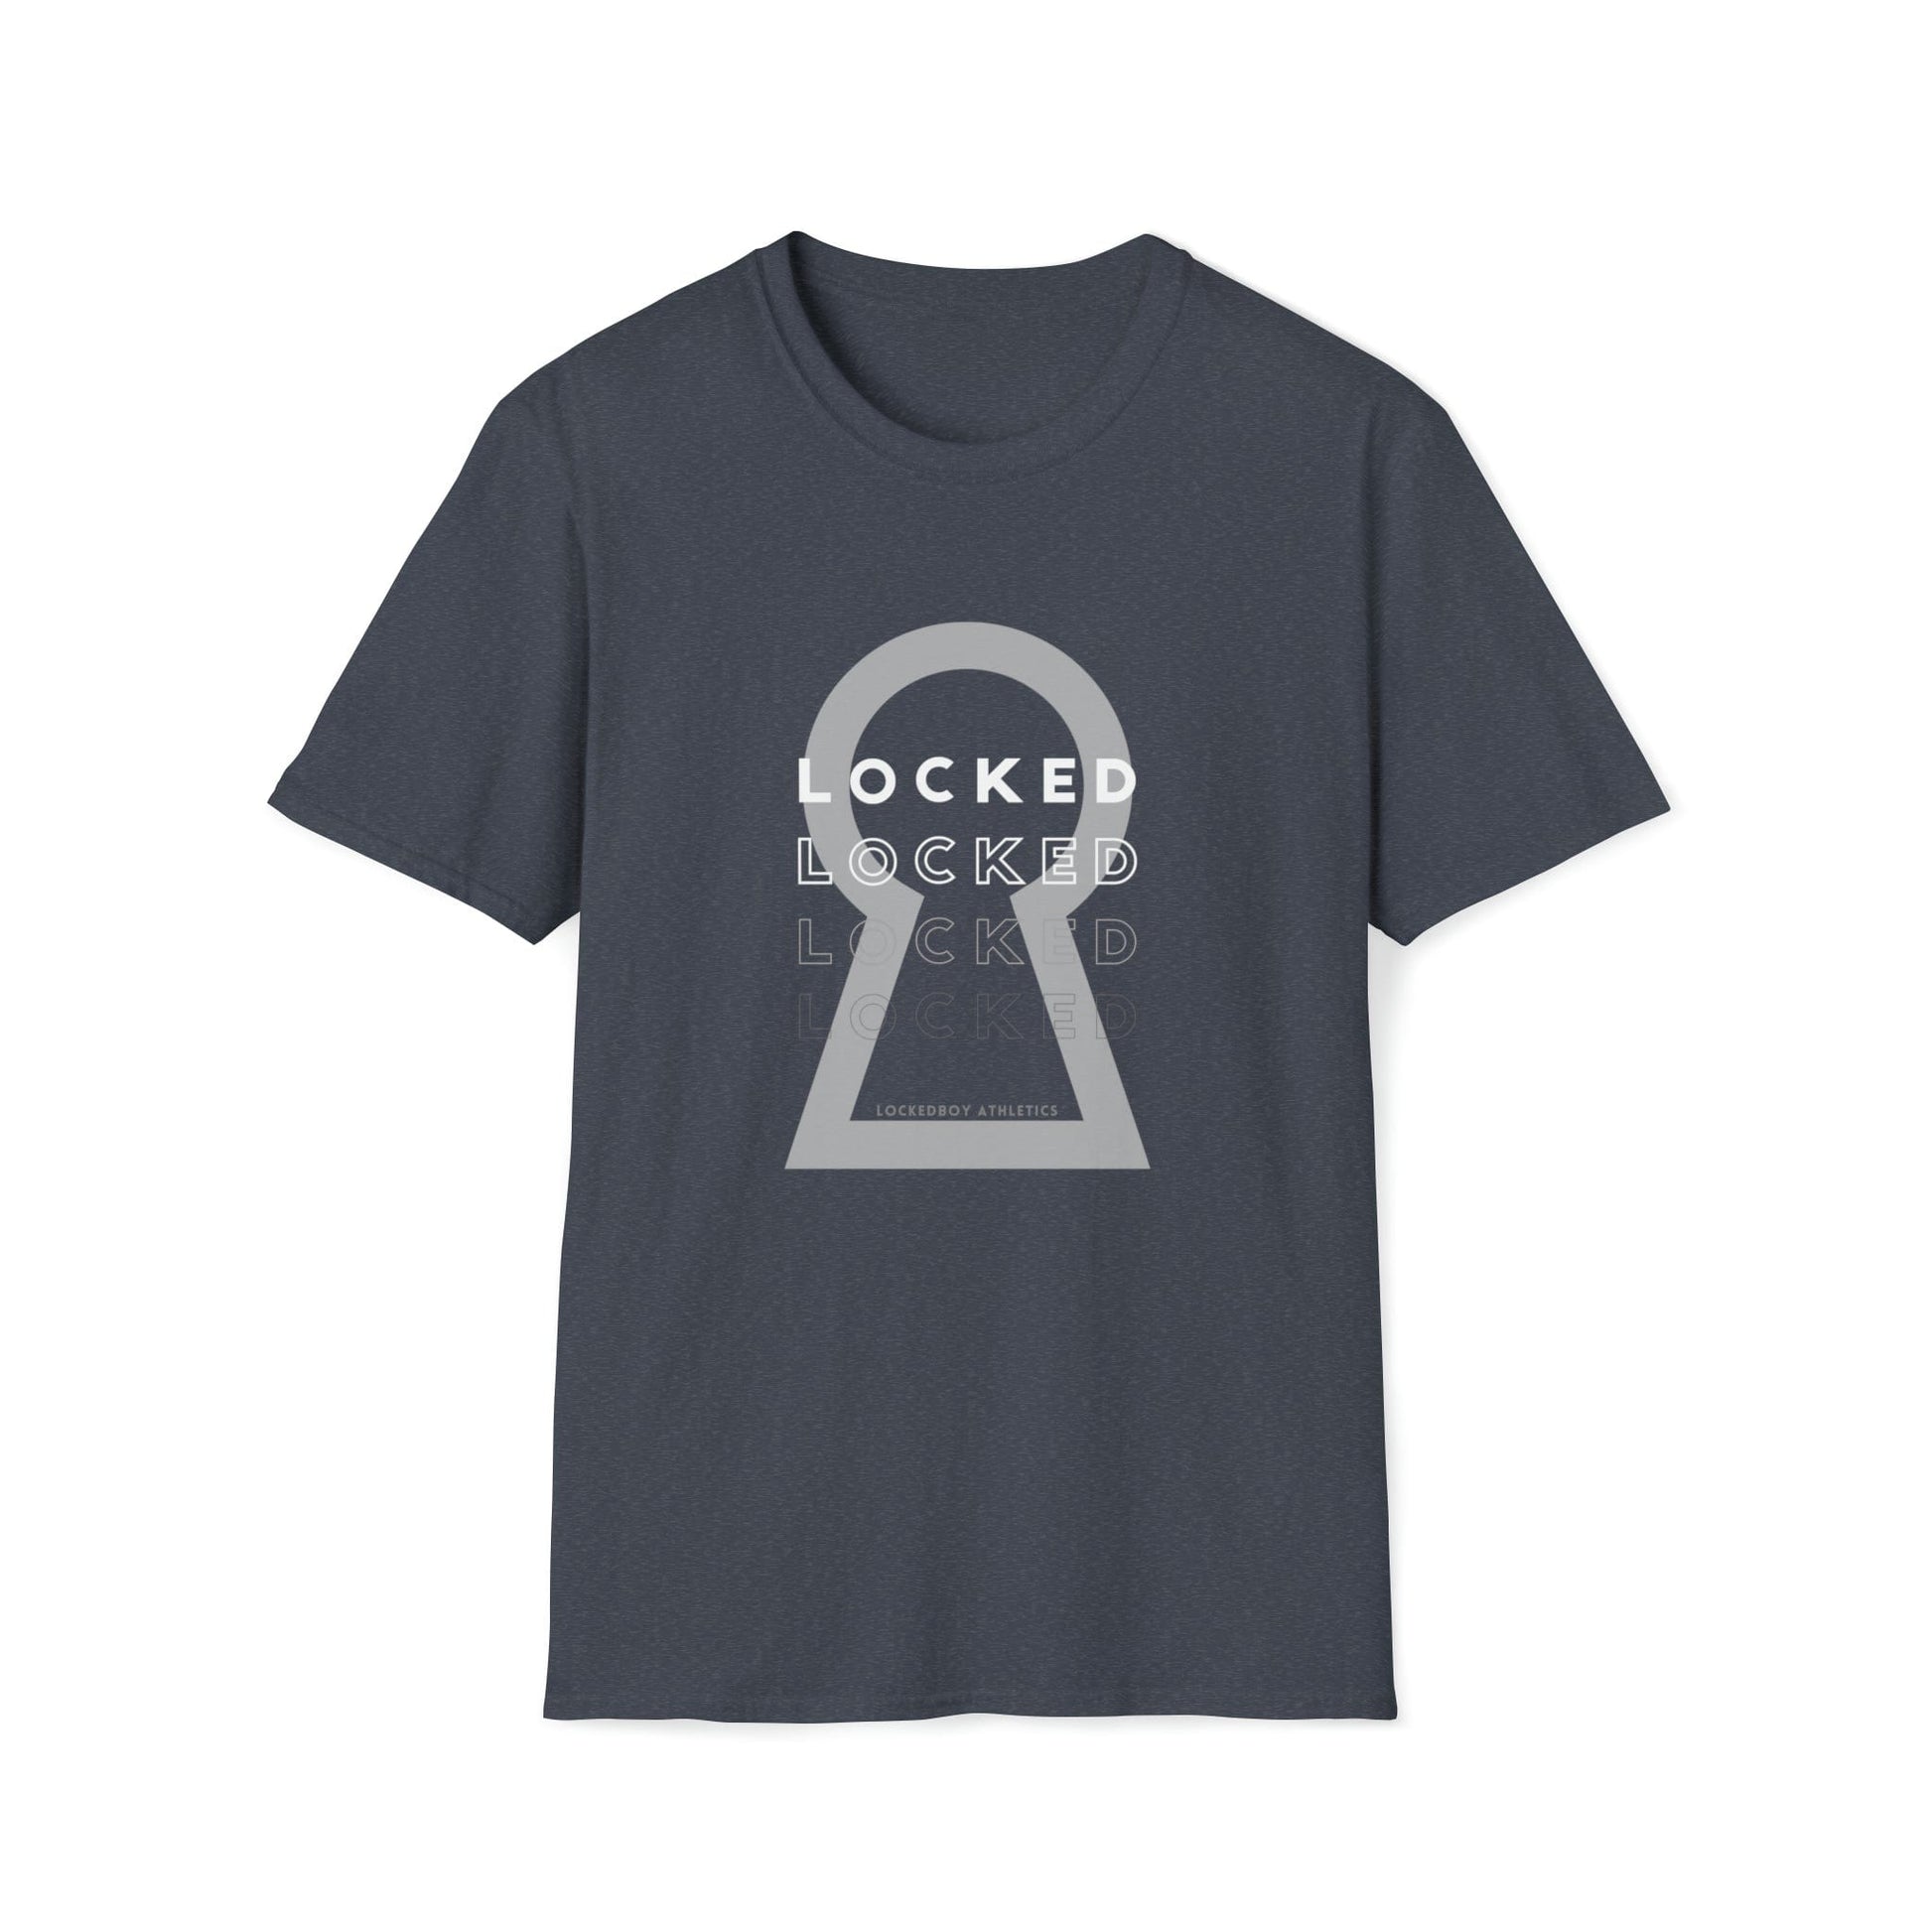 T-Shirt Lockedboy KeyHOLE Echo - Lockedboy Athletics Chastity Tshirt LEATHERDADDY BATOR